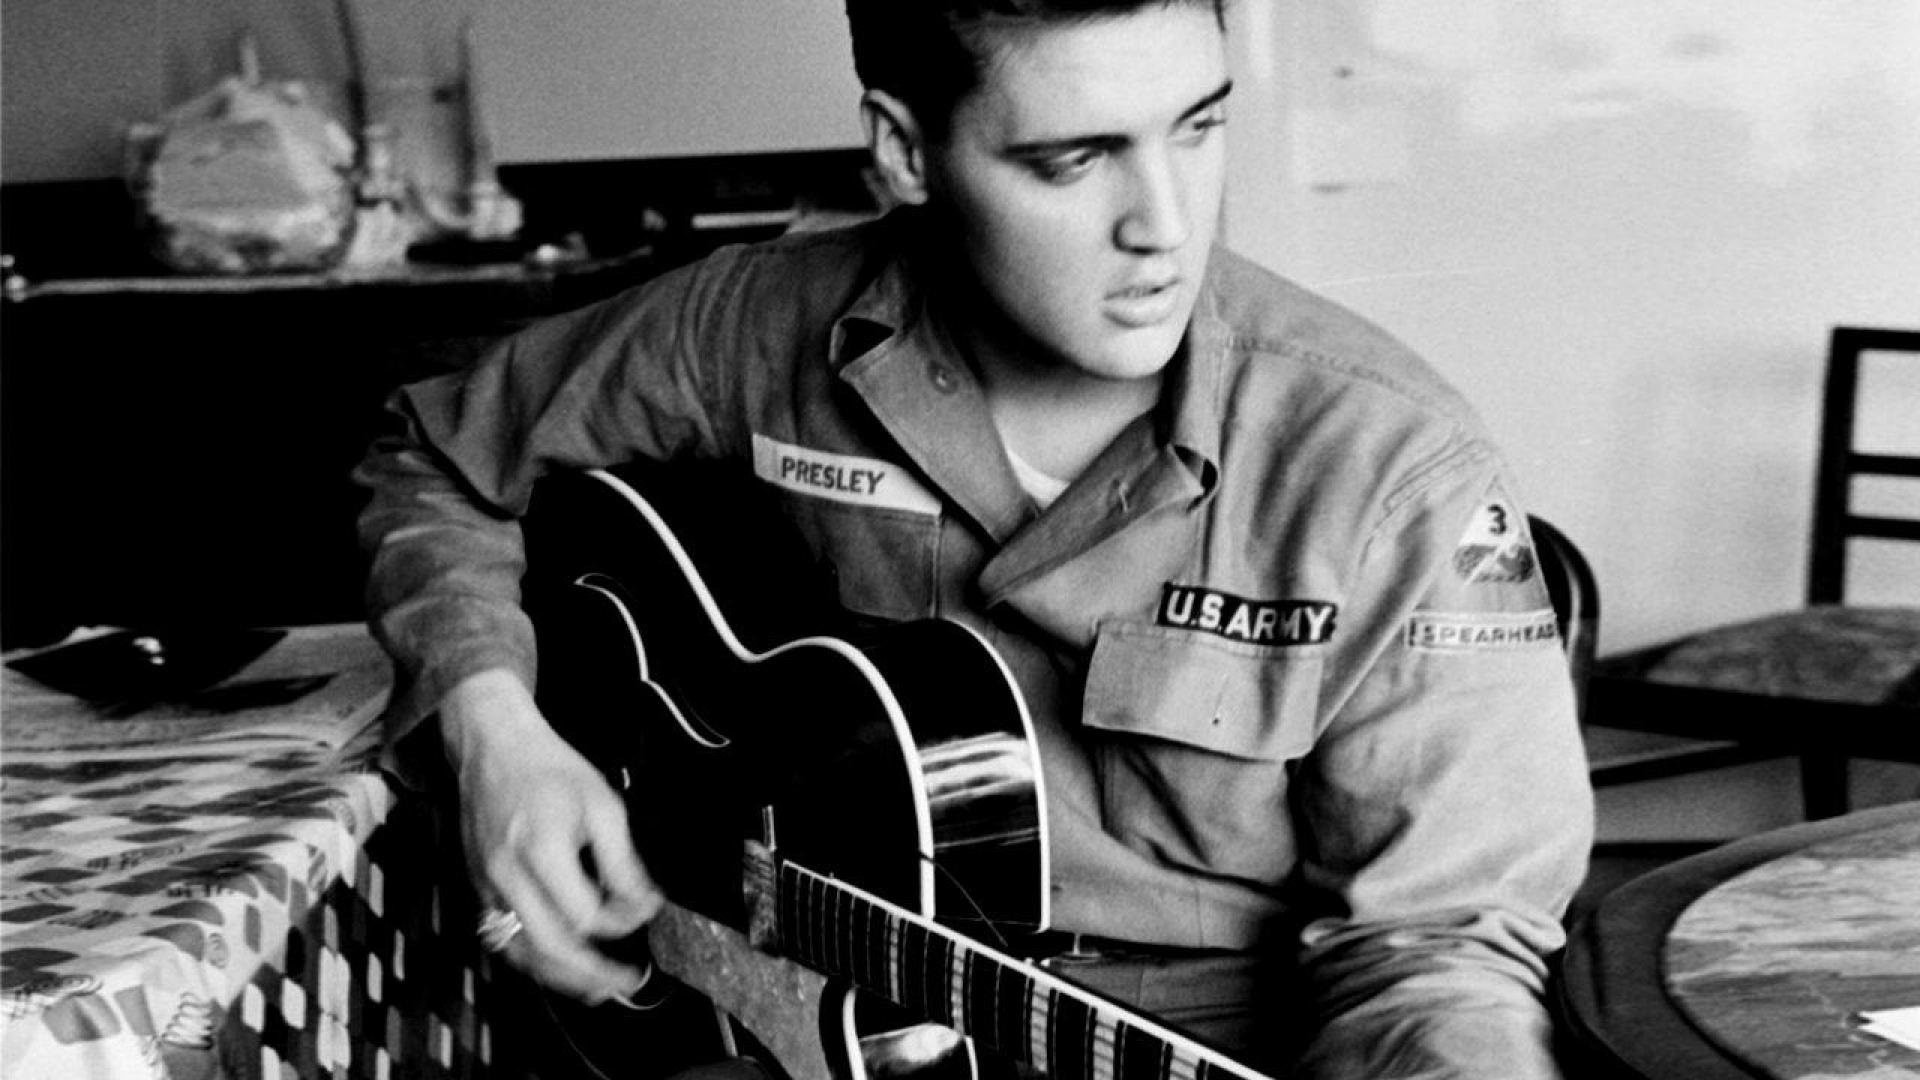 1920x1080 Music, Elvis Presley, Guitar, Us Army, Elvis, Singer, Elvis Presley